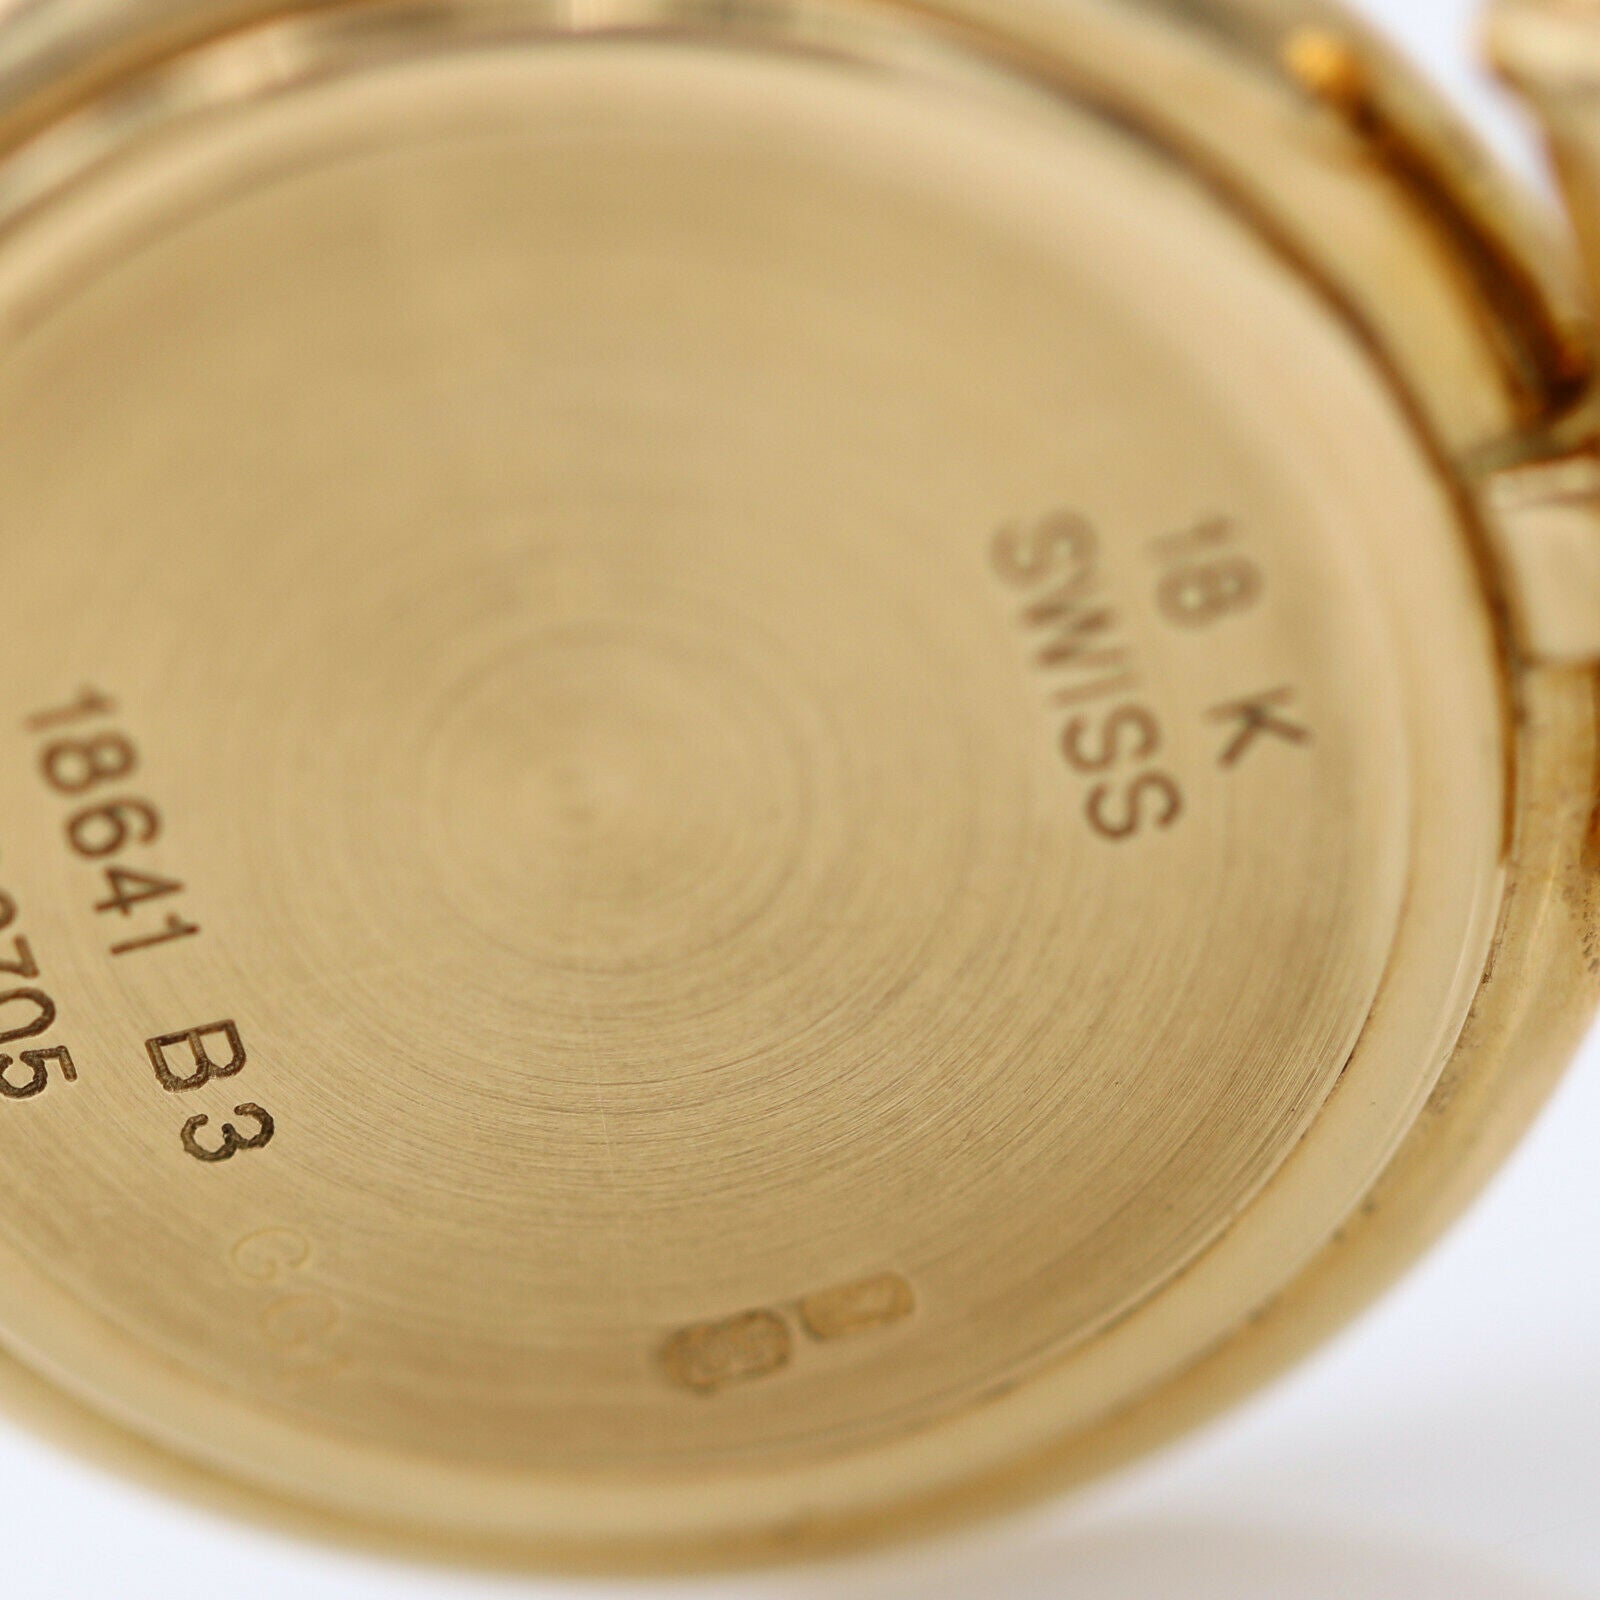 Women's Van Cleef & Arpels Diamant Watch 18k Yellow Gold 18641